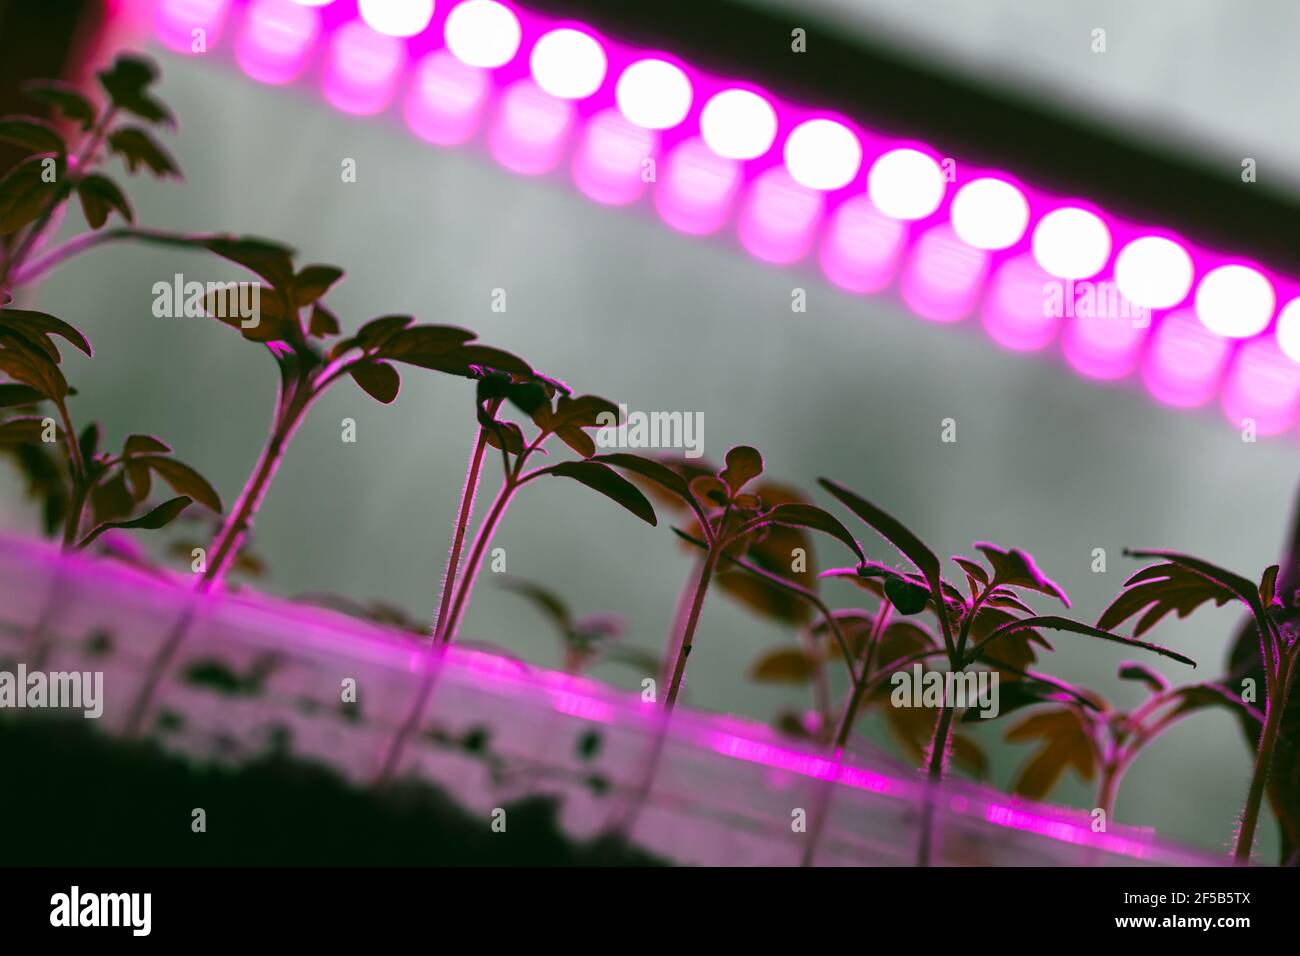 Le piantine di pomodoro crescono in scatole di plastica sotto la lampada fitofarmacina a spettro pieno. Sistema di illuminazione per agricoltura interna Foto Stock